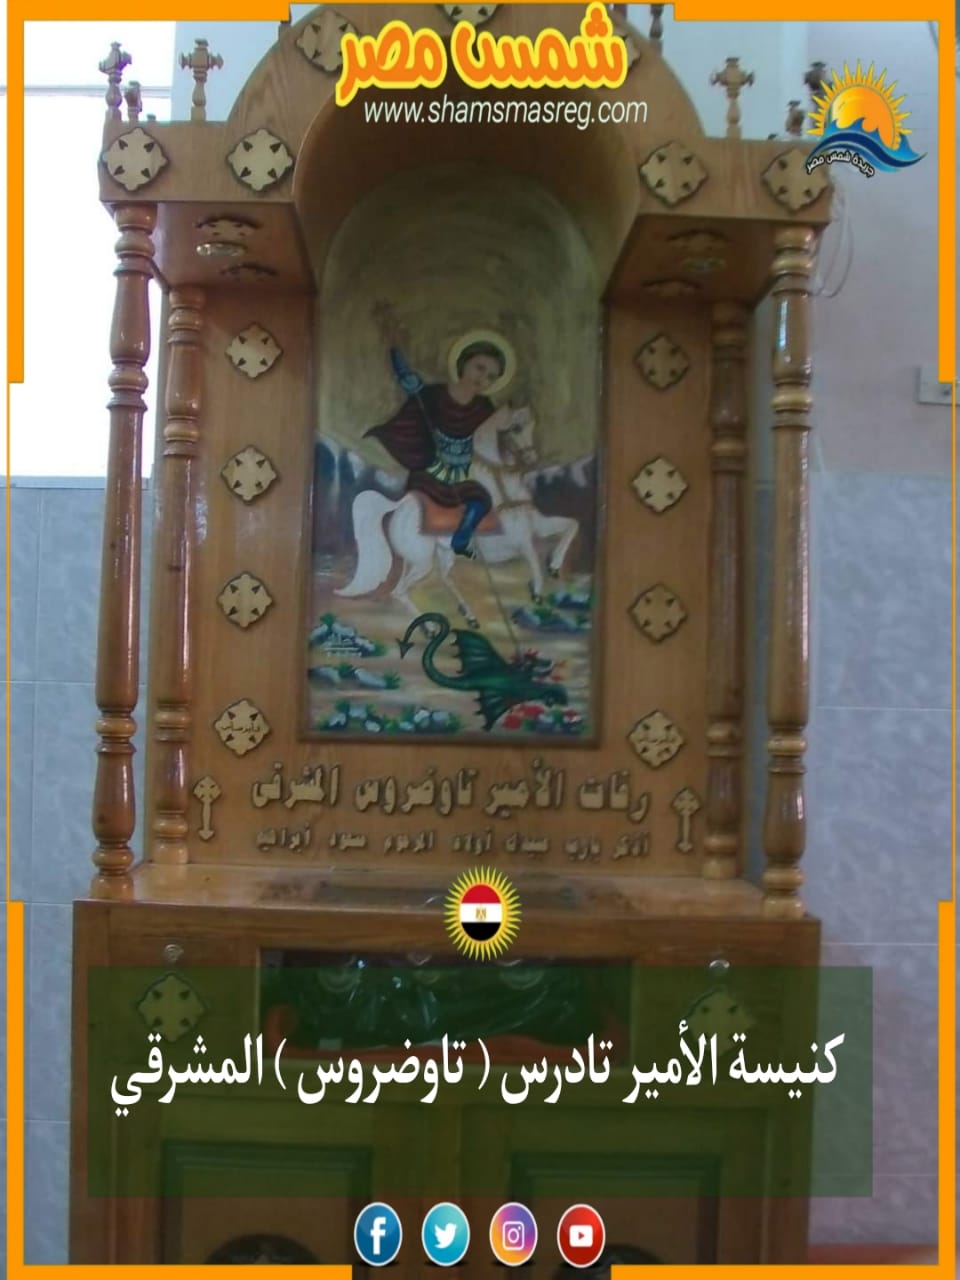 شمس مصر/ كنيسة الأمير تادرس المشرقي.